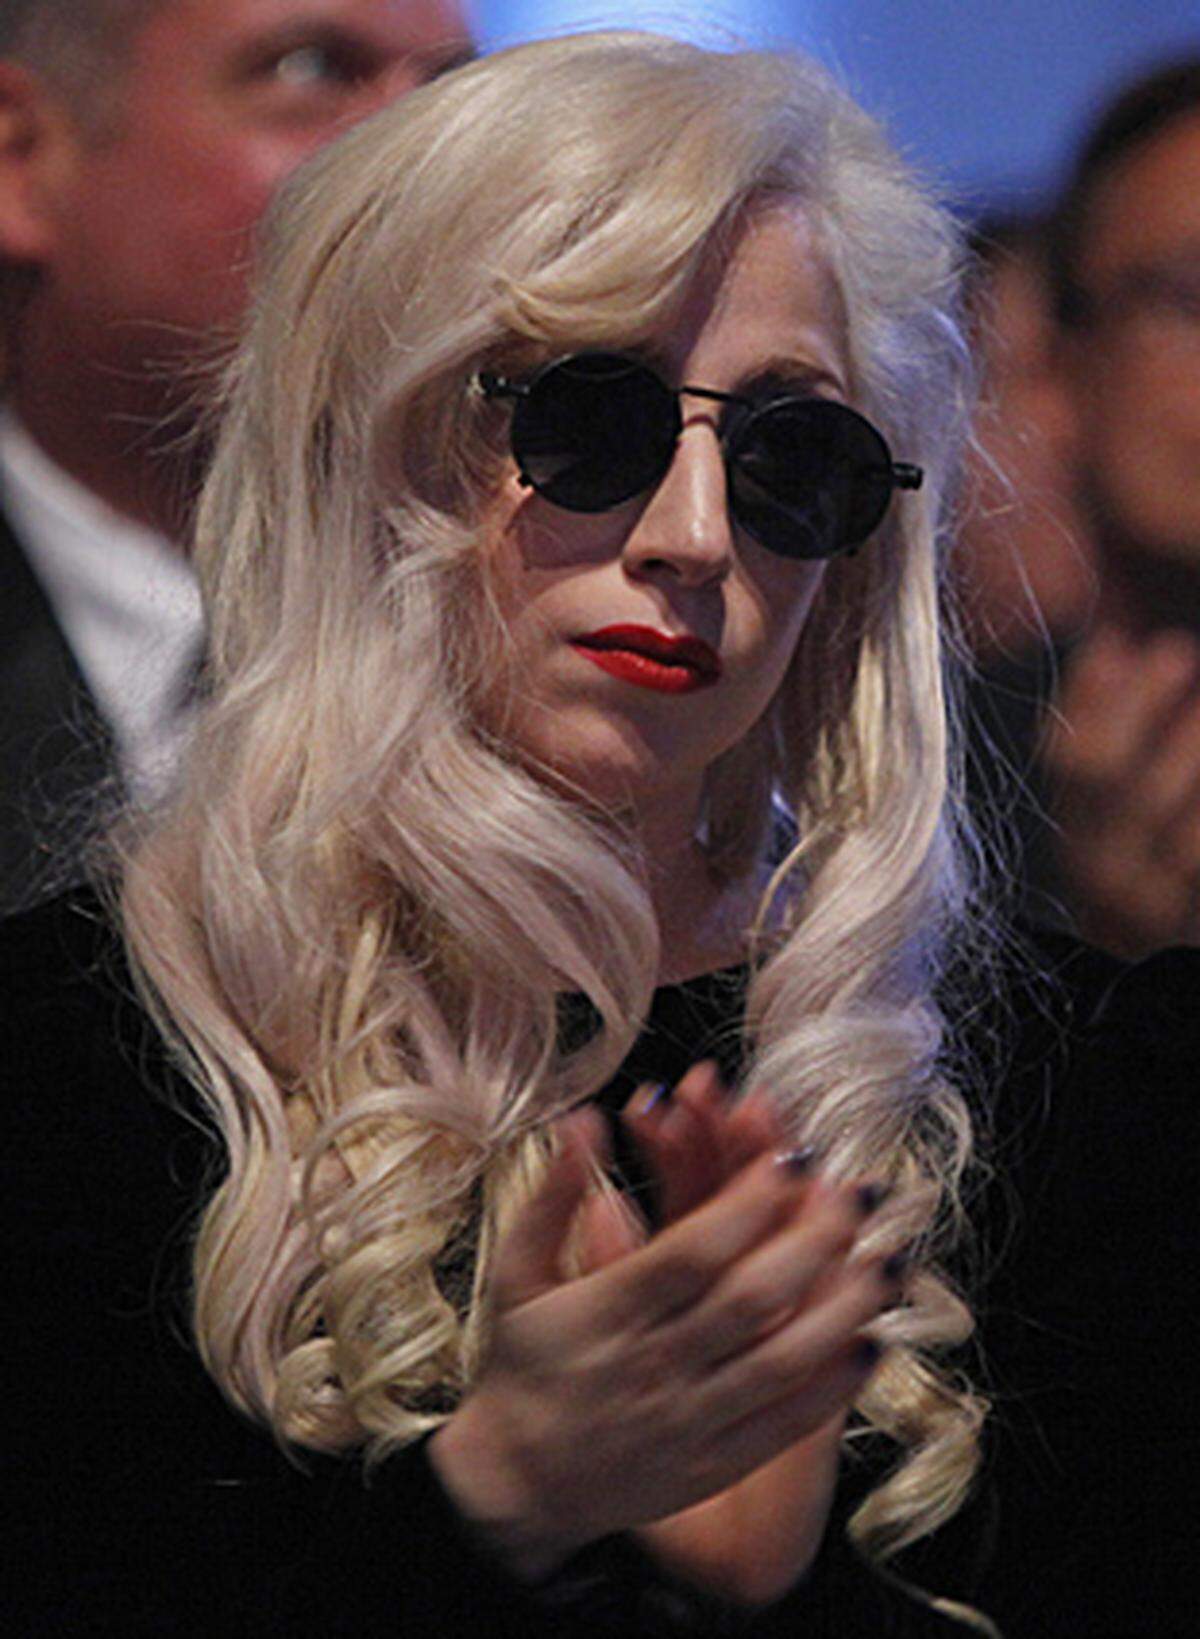 Blonde Haare, heller Teint, schmächtige Figur und eine große Nase: So, oder zumindest so ähnlich sieht Lady Gaga in natura aus.  Aber wenn die Popsängerin der Stunde vor ihr Publikum tritt, bevorzugt sie eine aufwändige Maske: An manchen Stellen drapiert sie Stoffschichten übereinander, an anderen setzt sie auf blanke Haut. Für hohe Schuhe, Gesichtsschleier und großzügige Beinfreiheit scheint sie ein Faible zu haben.  Ob Lady Gaga modisch eher eine Top- oder Flop-Kandidatin ist, darüber scheiden sich die Geister. Machen Sie sich selbst ein Bild, anhand einiger Highlights aus dem Kleiderschrank der Inszenierungskünstlerin: